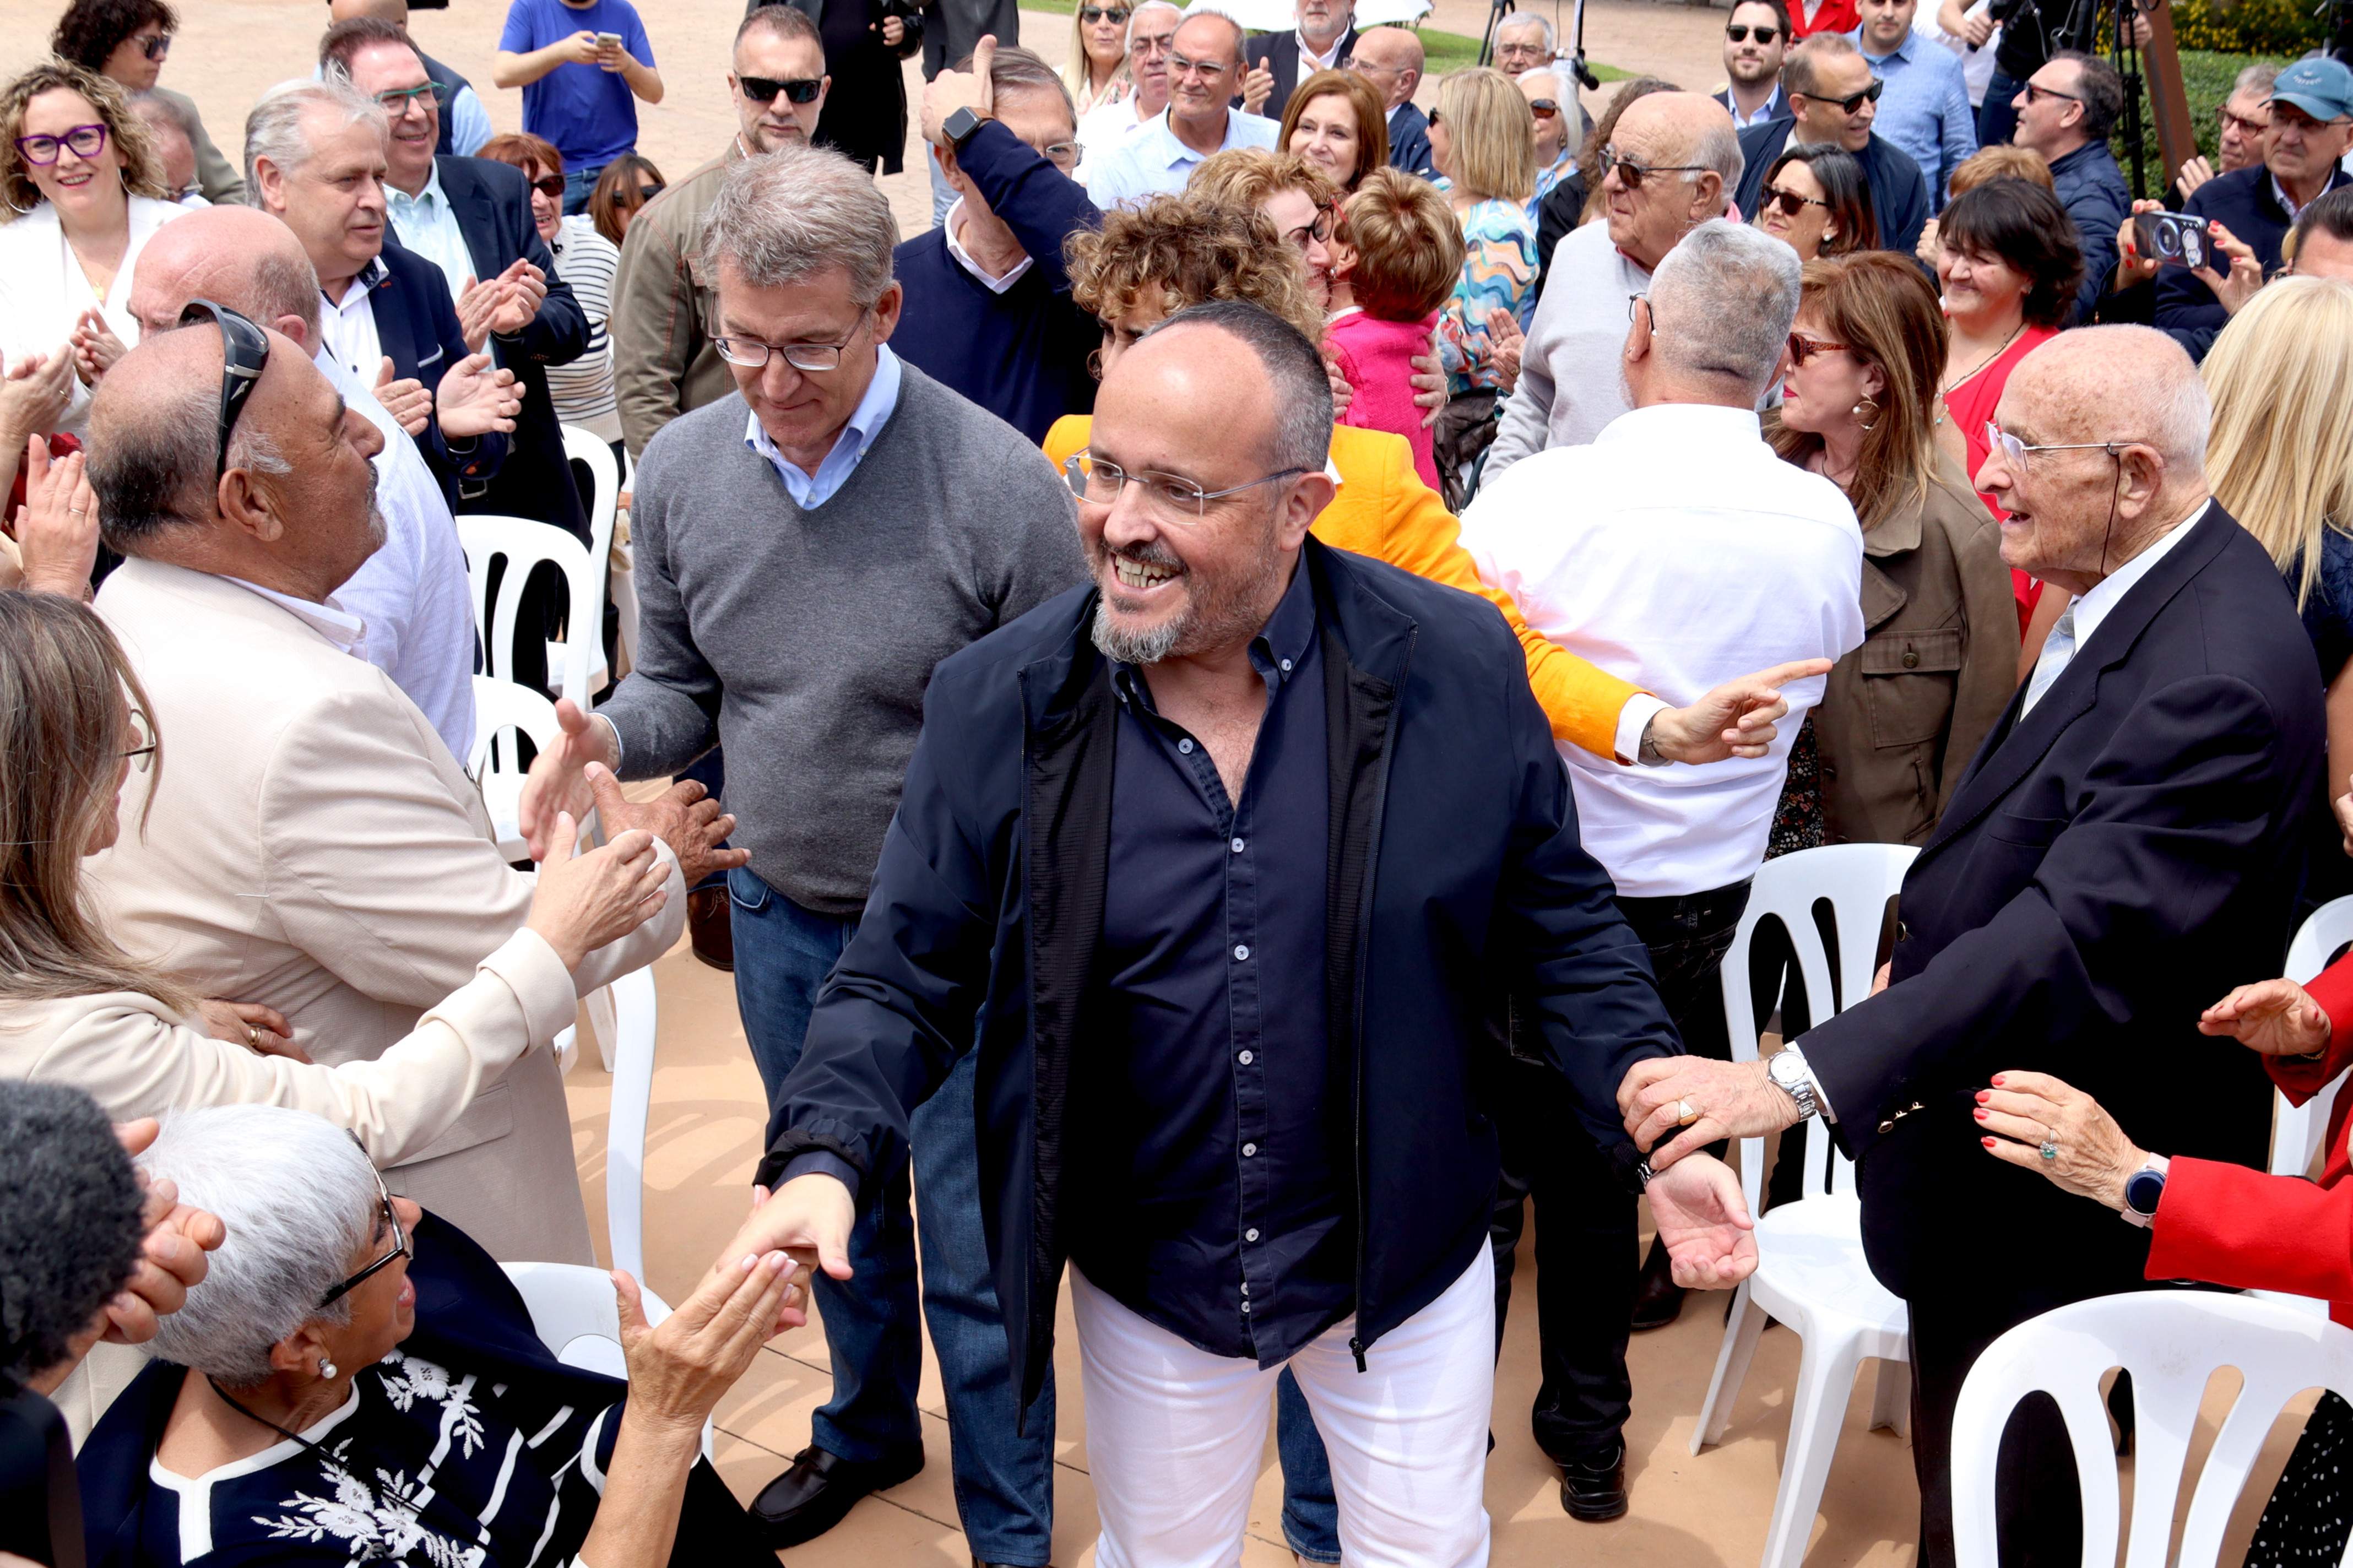 Alejandro Fernández convida Sánchez i Puigdemont a plegar: “Tindran el nostre suport, afecte i comprensió”